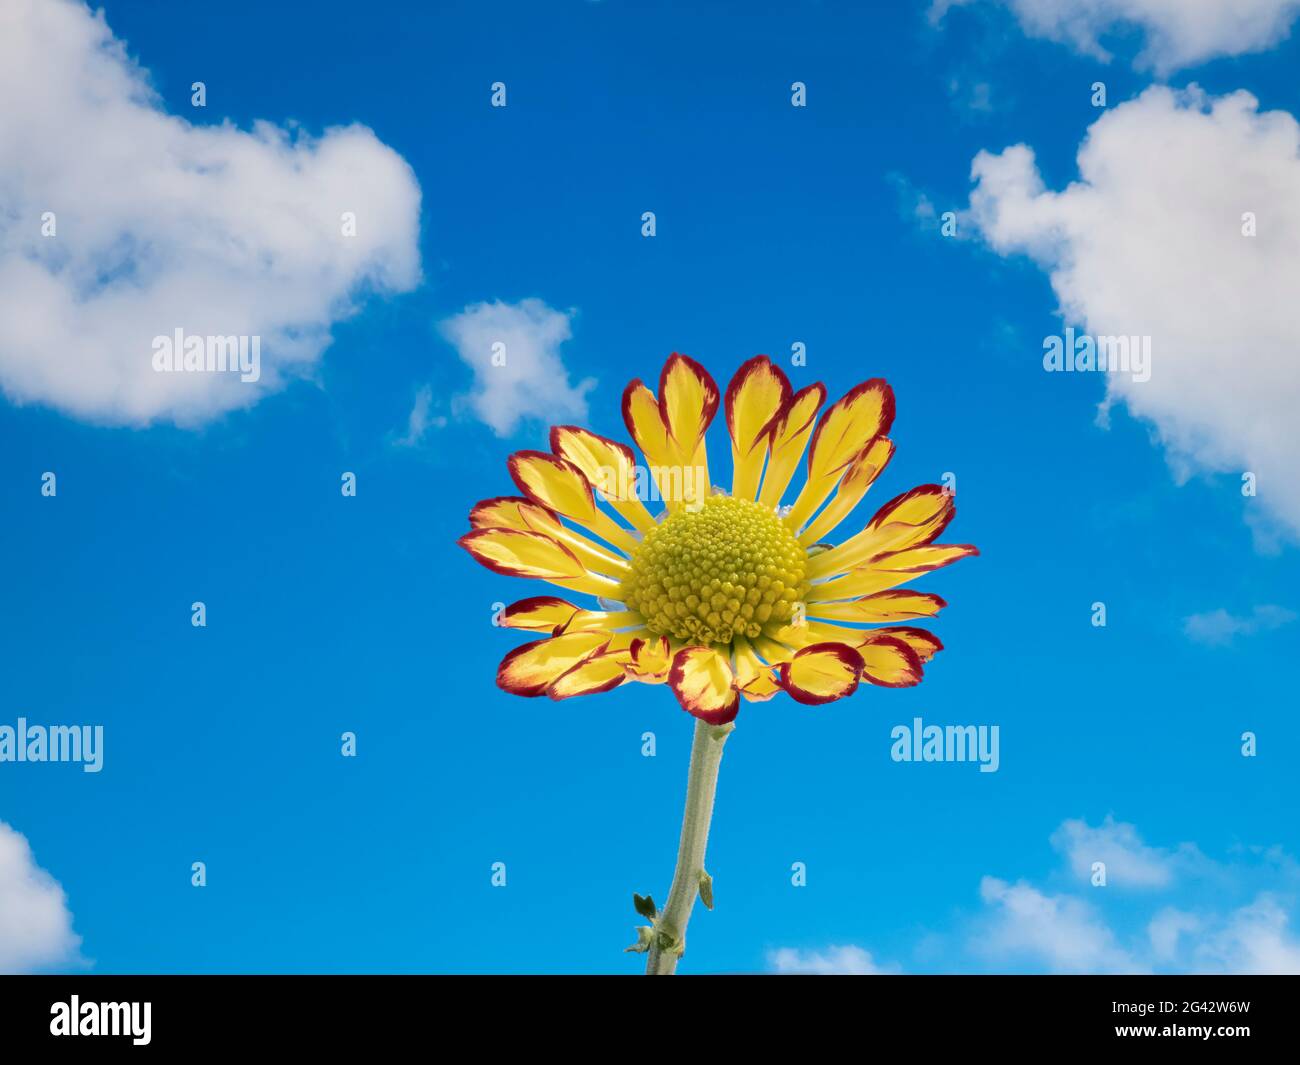 Primer plano del crisantemo contra el cielo azul con suaves nubes blancas Foto de stock